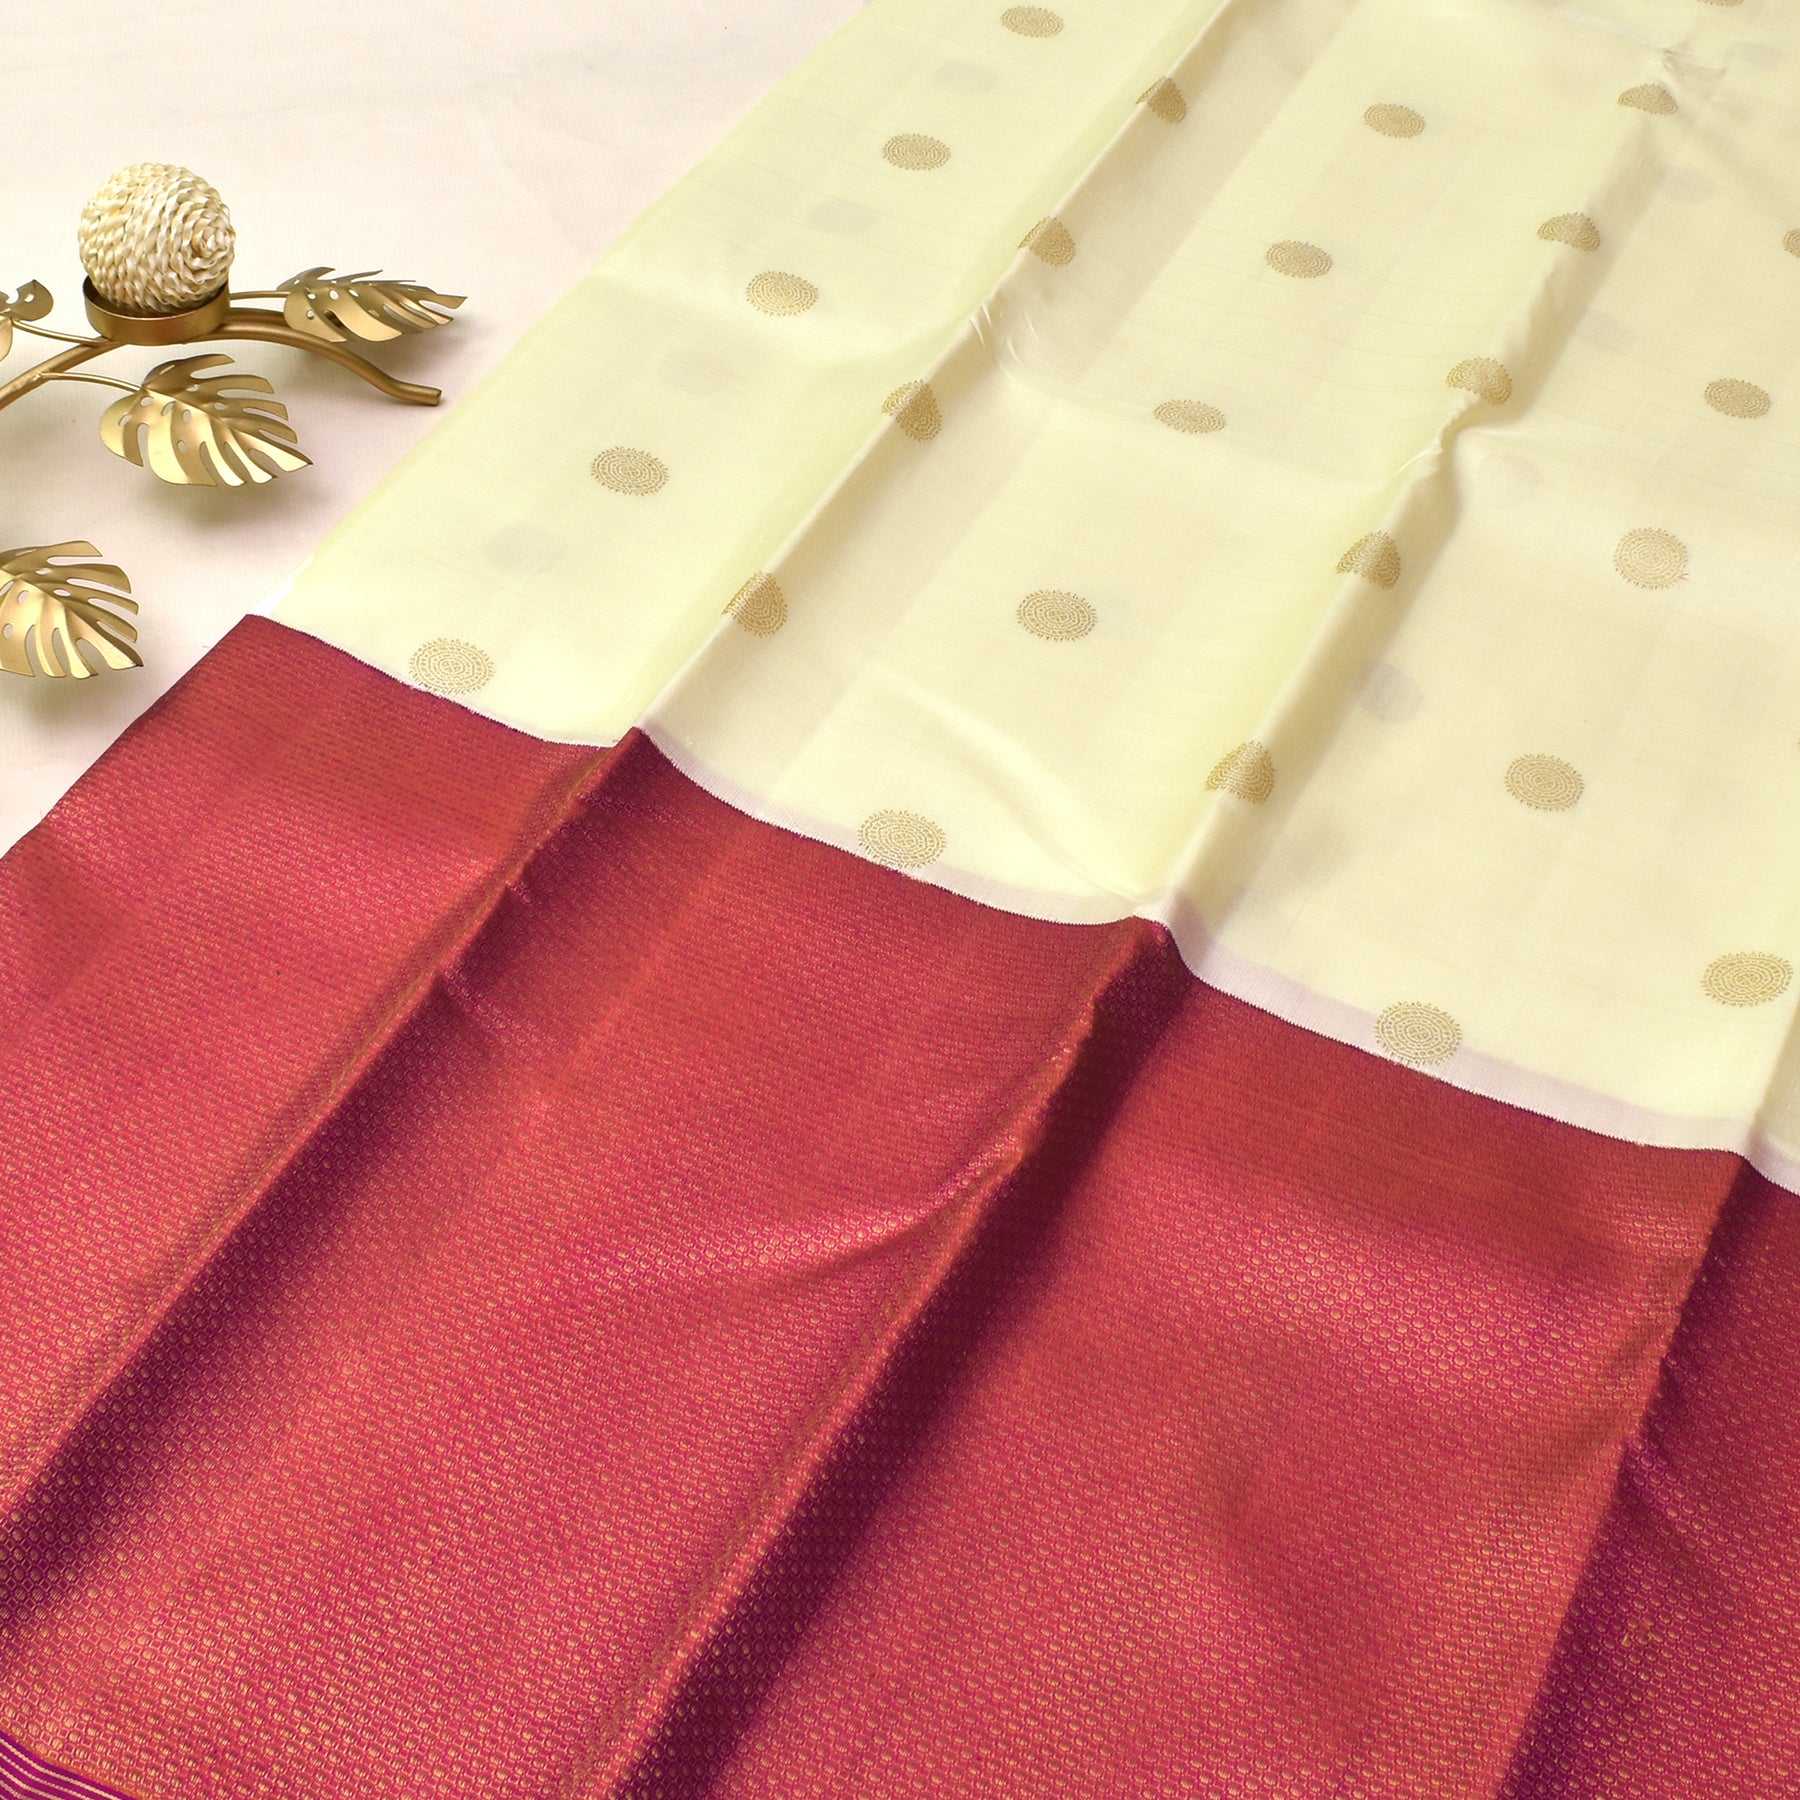 Trending: Paithani Sarees For Your Muhurtham | Wedding blouse designs,  Wedding saree blouse designs, Indian bridal fashion